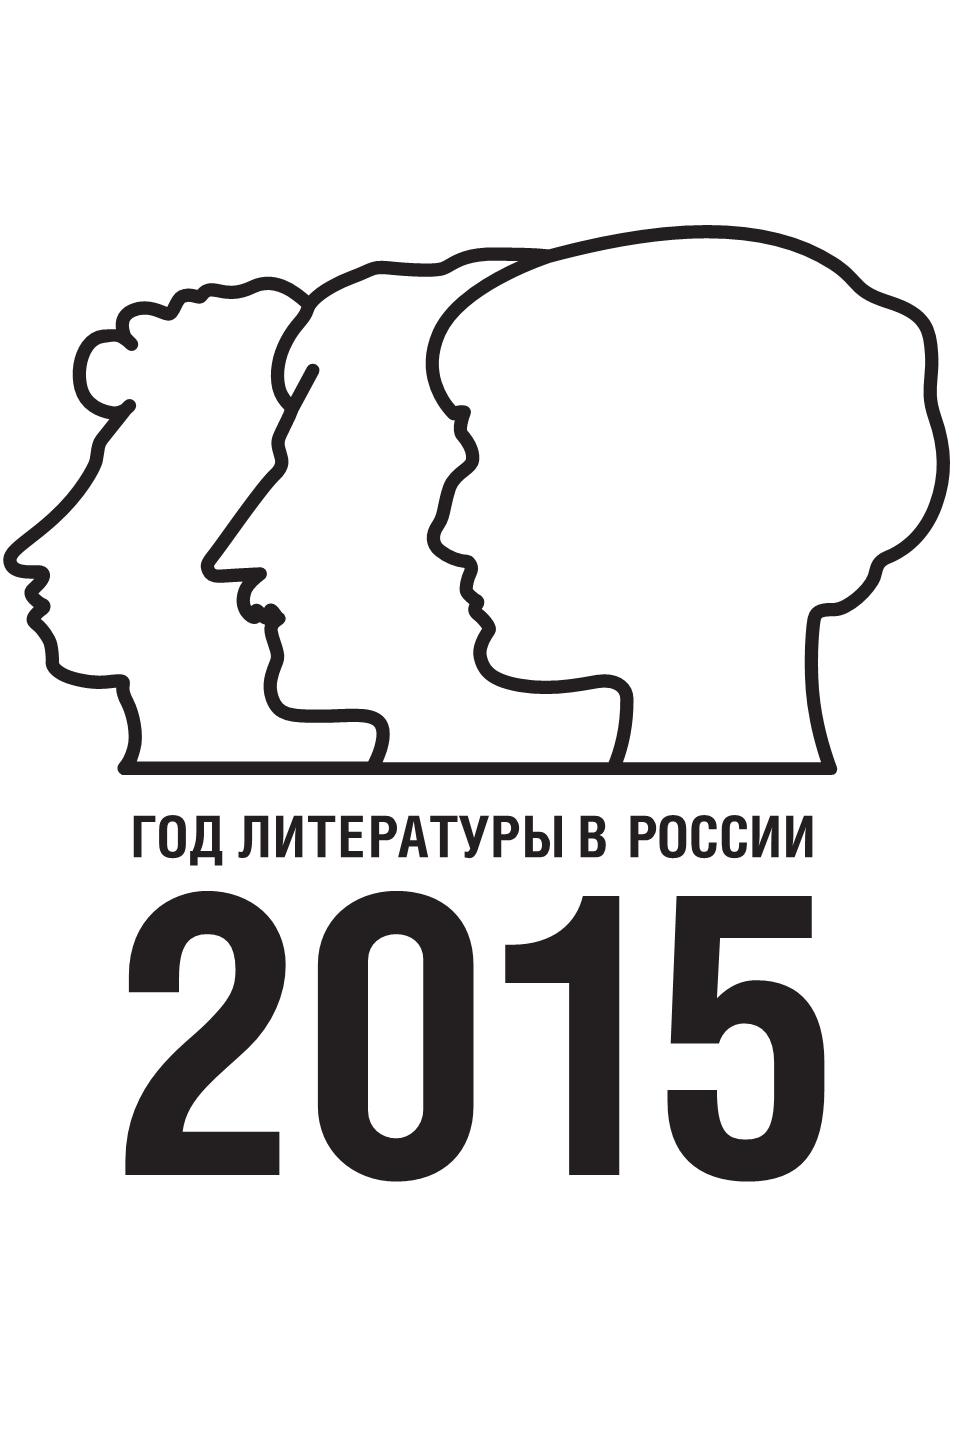 В 2015 году исполняется. Год литературы в России. Год литературы в России 2015. Год литературы логотип.